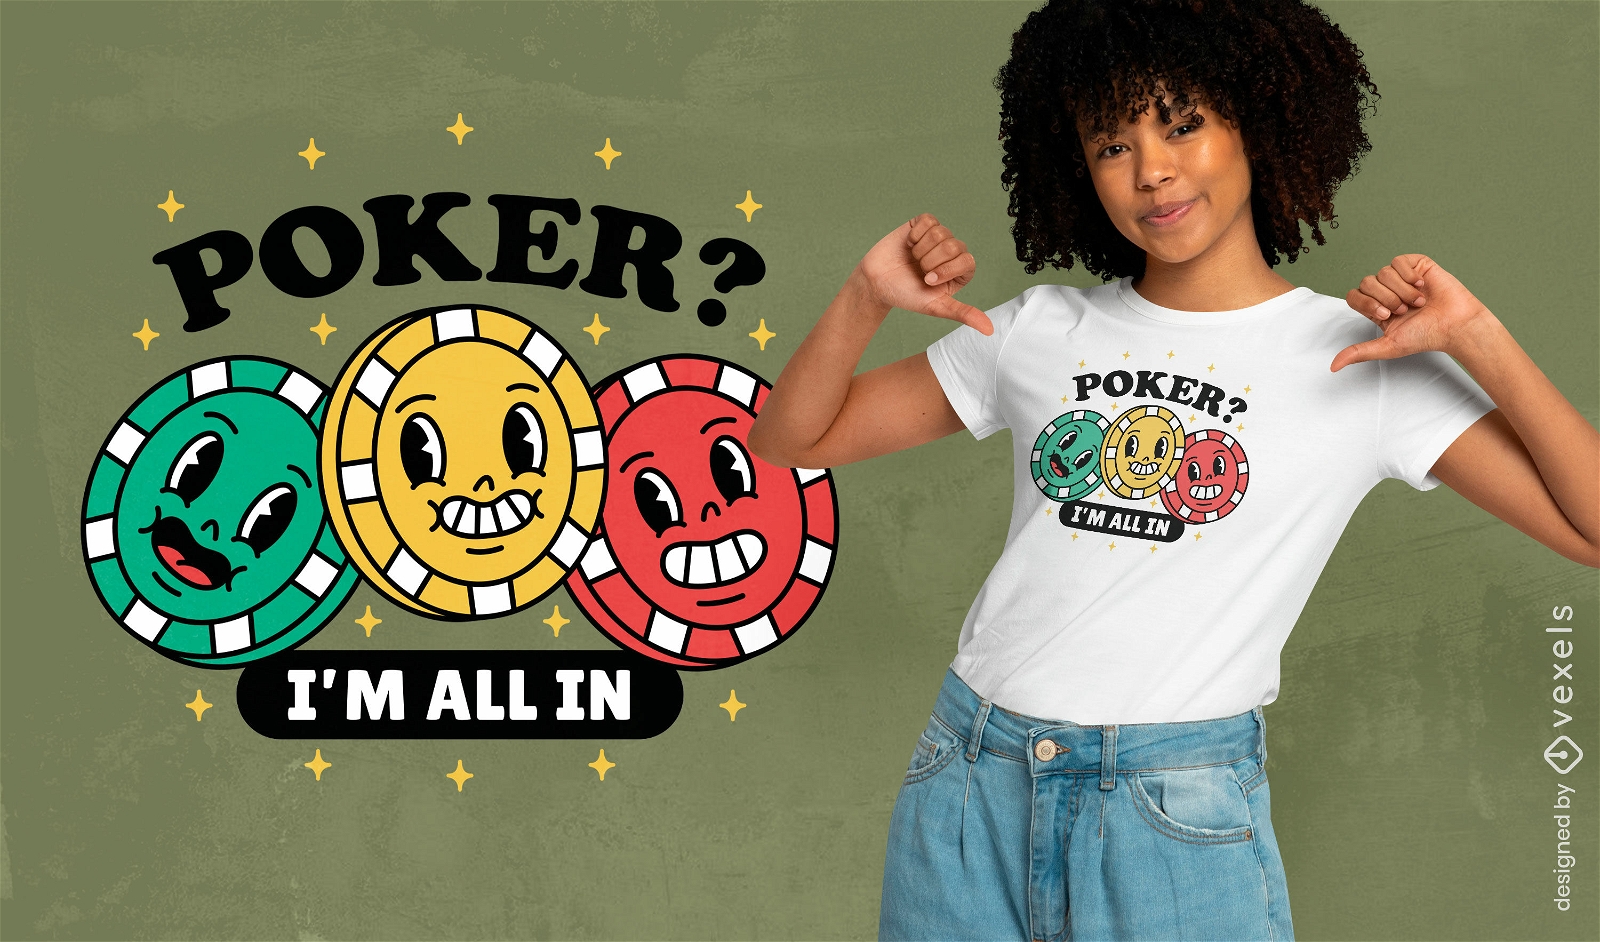 All in poker t-shirt design